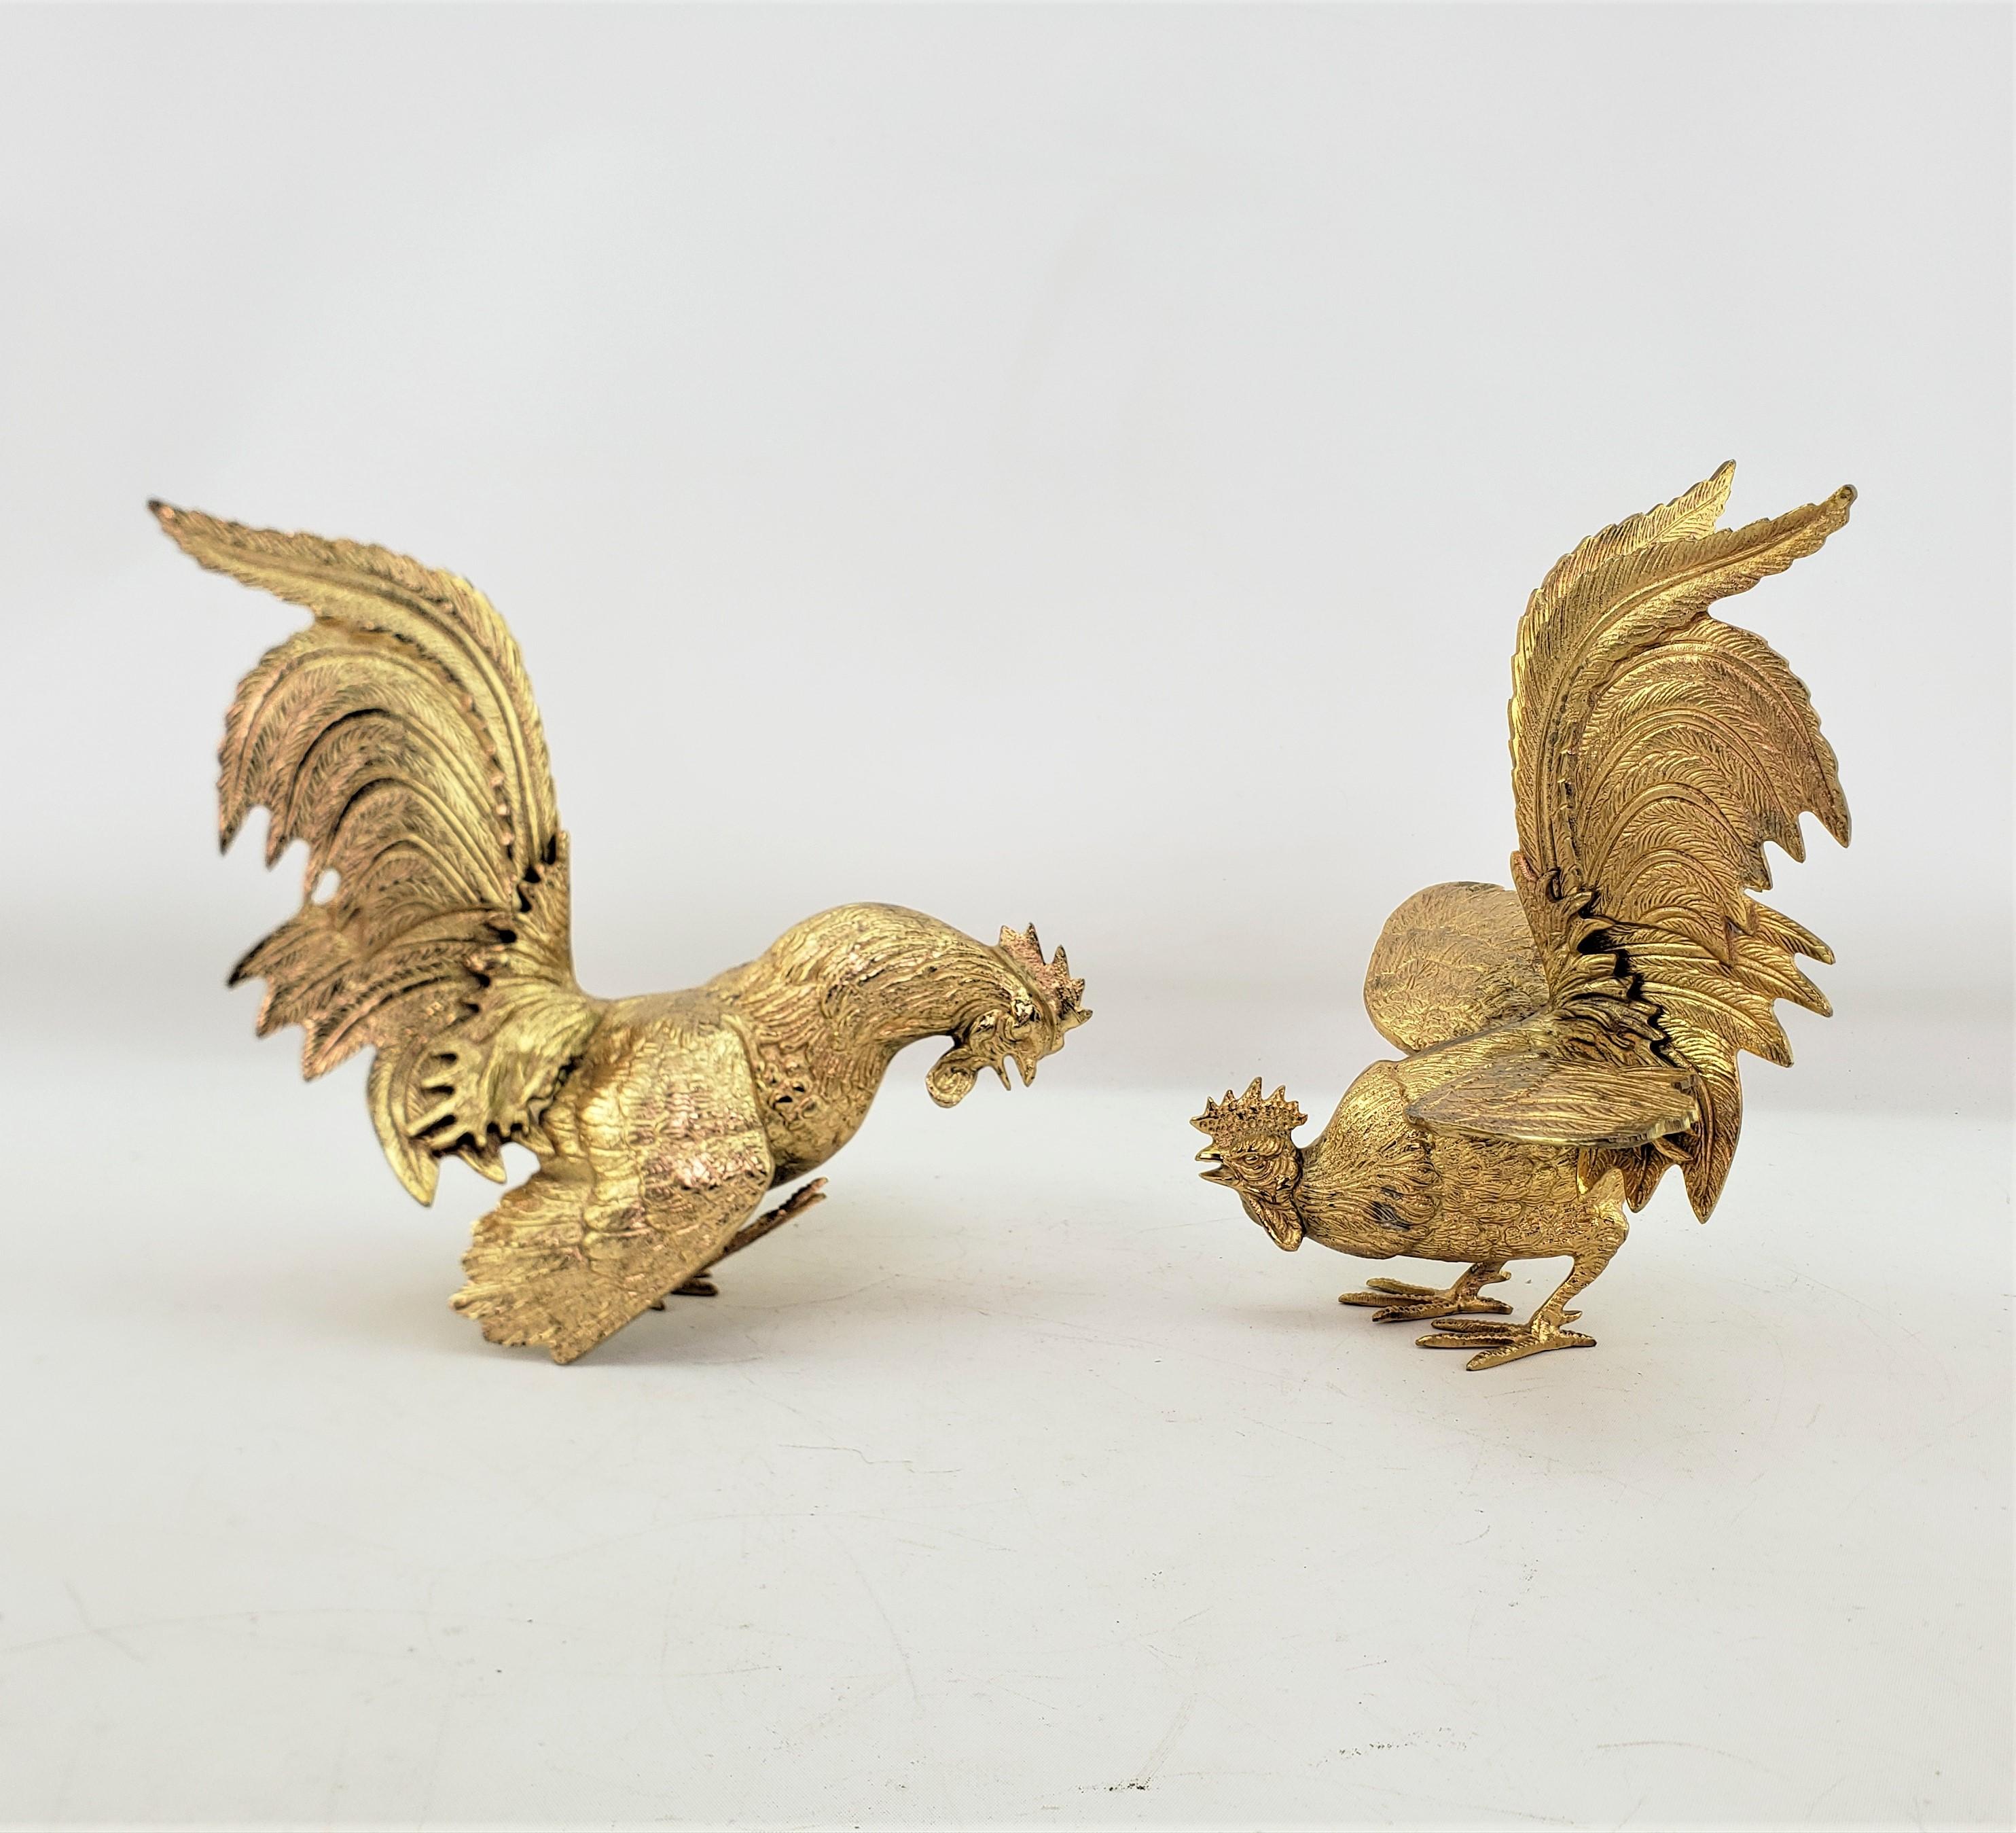 Dieses Paar kunstvoll gegossener Kampfhähne ist unsigniert, stammt aber vermutlich aus Italien und wurde um 1920 im viktorianischen Stil hergestellt. Die gut gegossenen Hähne bestehen aus gegossenem Metall, das vergoldet ist. Ein Hahn des Paares